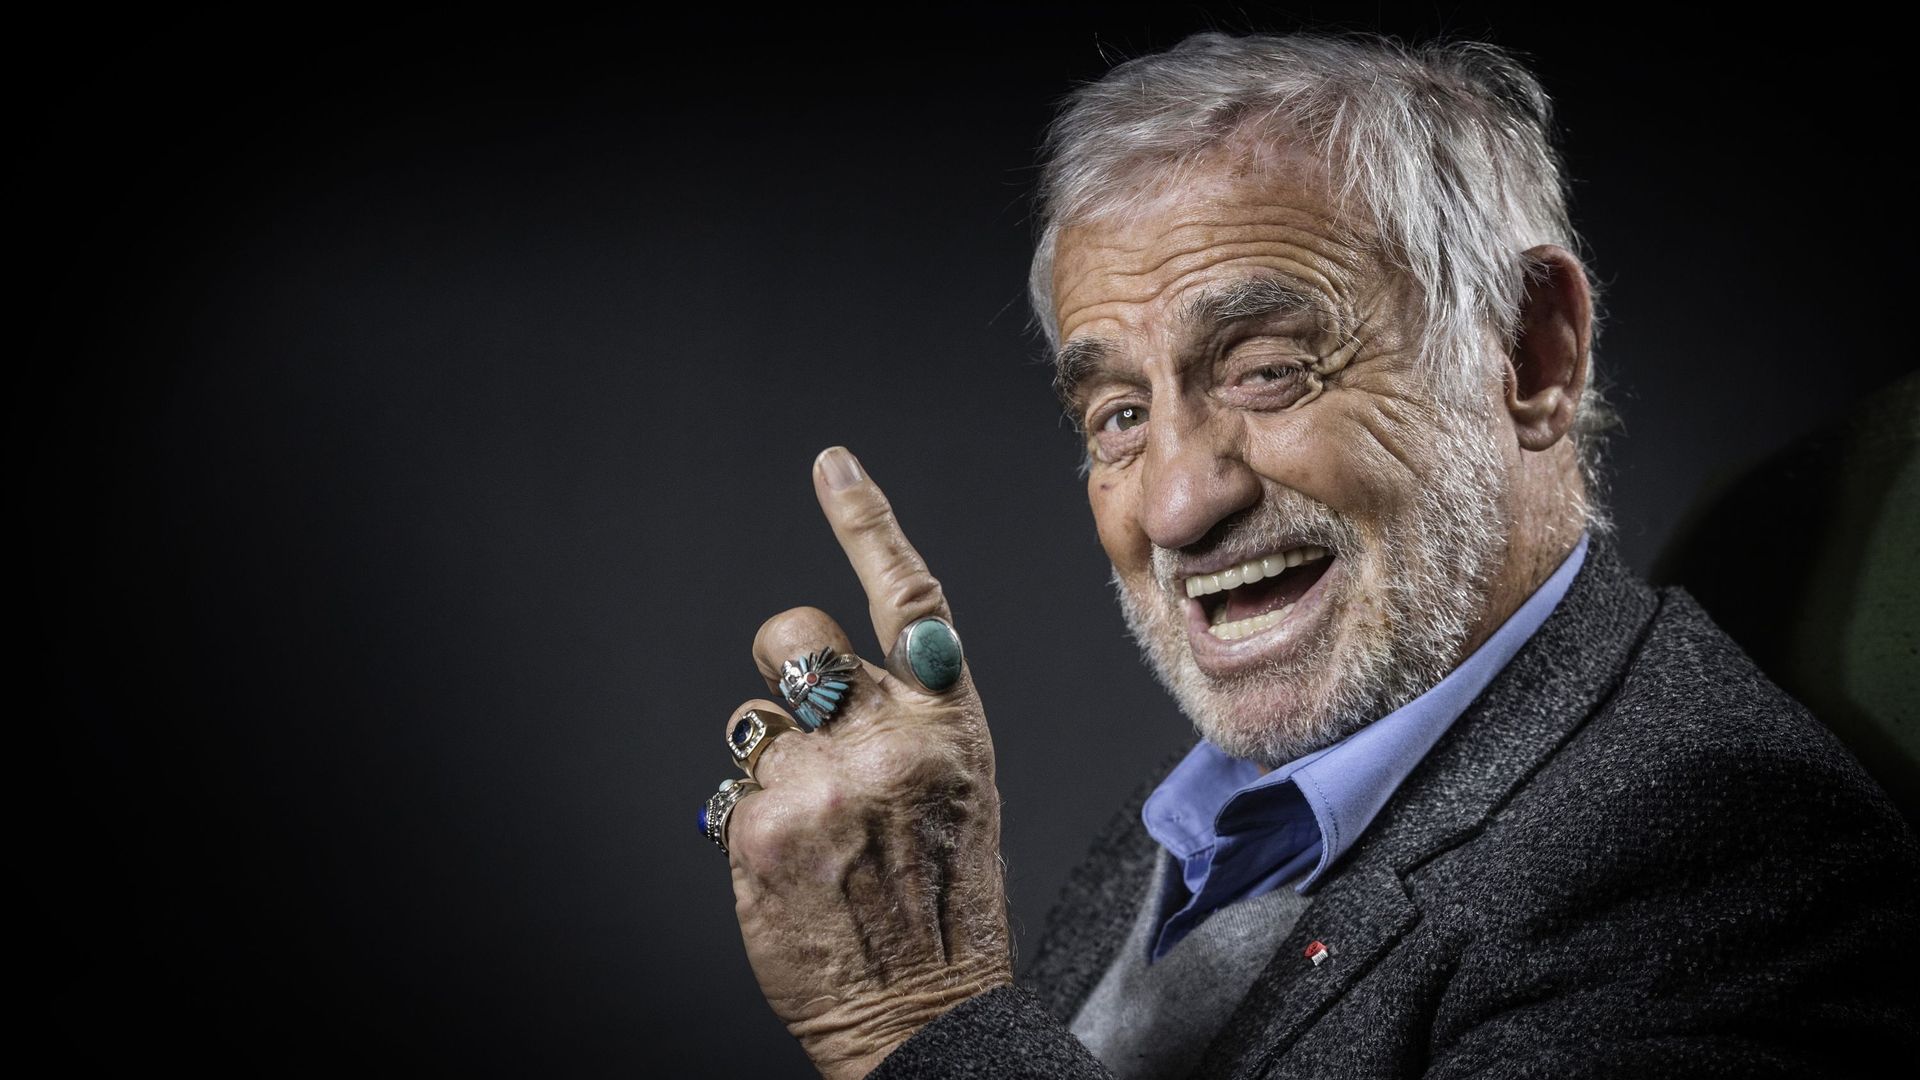 jean-paul-belmondo-nous-a-quittes-a-88-ans-retour-sur-la-vie-et-la-carriere-de-l-enfant-gate-du-cinema-francais